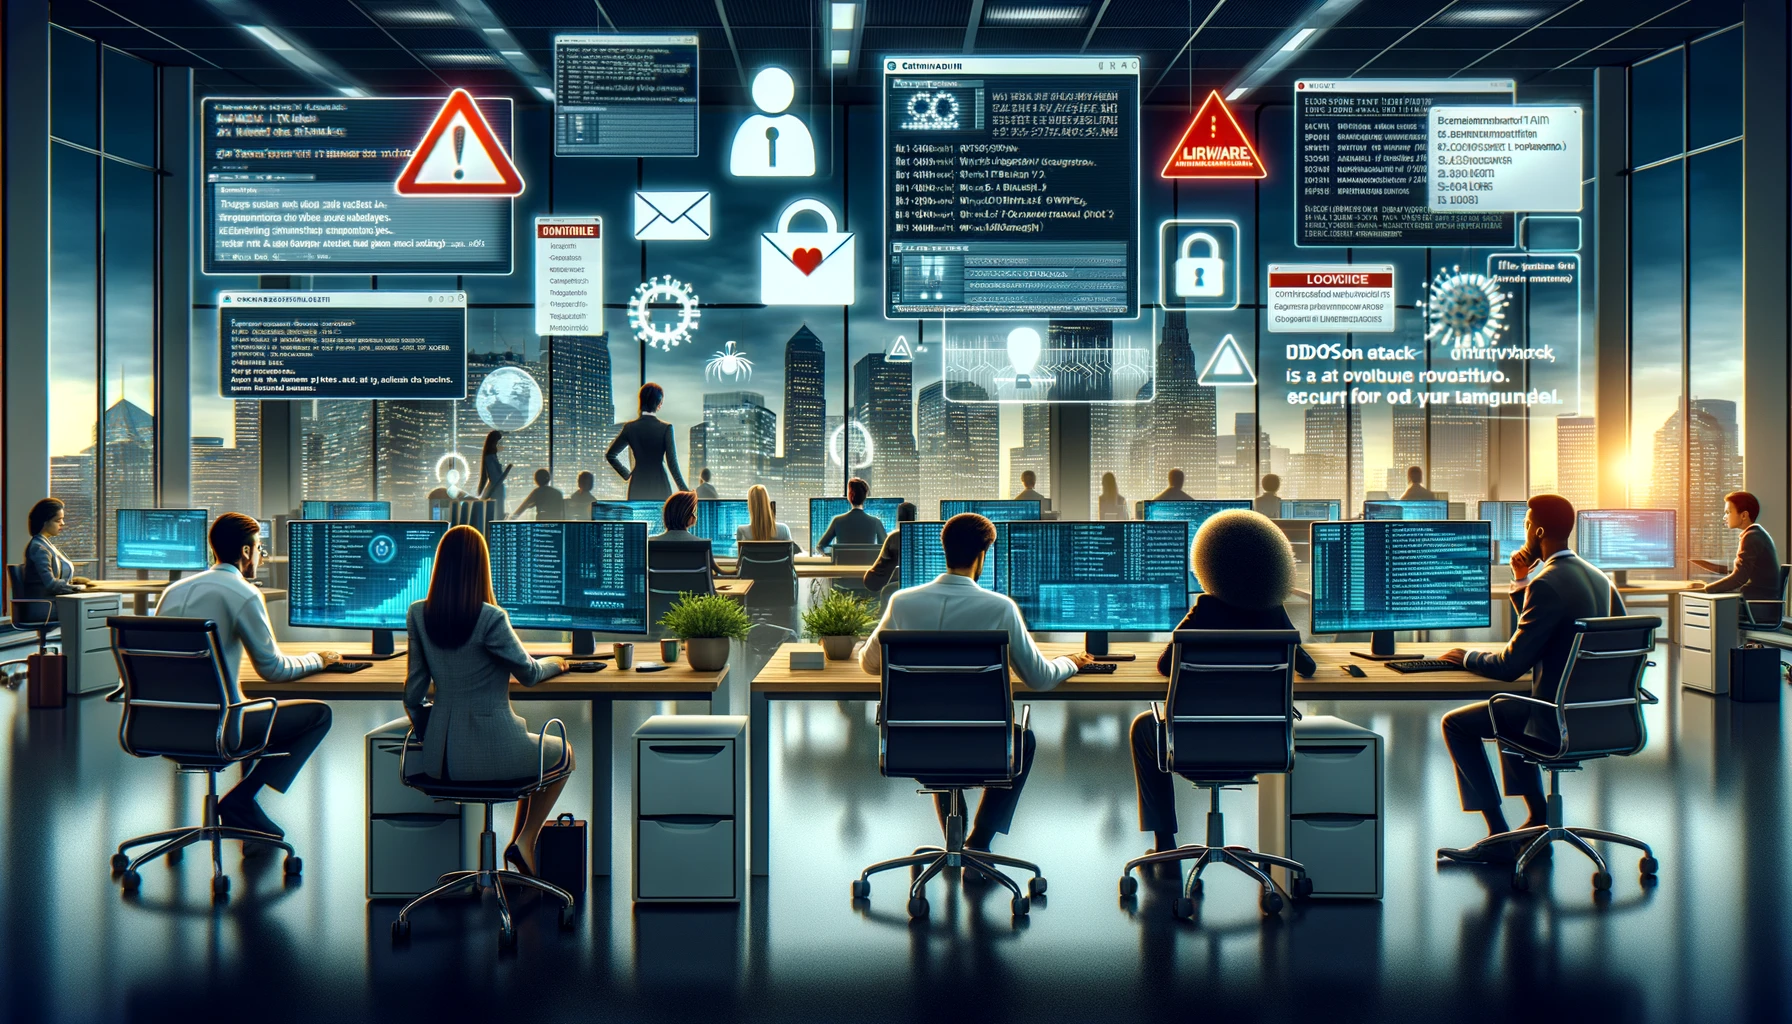 En una oficina moderna, empleados de diversas procedencias enfrentan amenazas cibernéticas en sus ordenadores: phishing, malware, ataques DDoS y de fuerza bruta, resaltando la urgencia de la ciberseguridad.